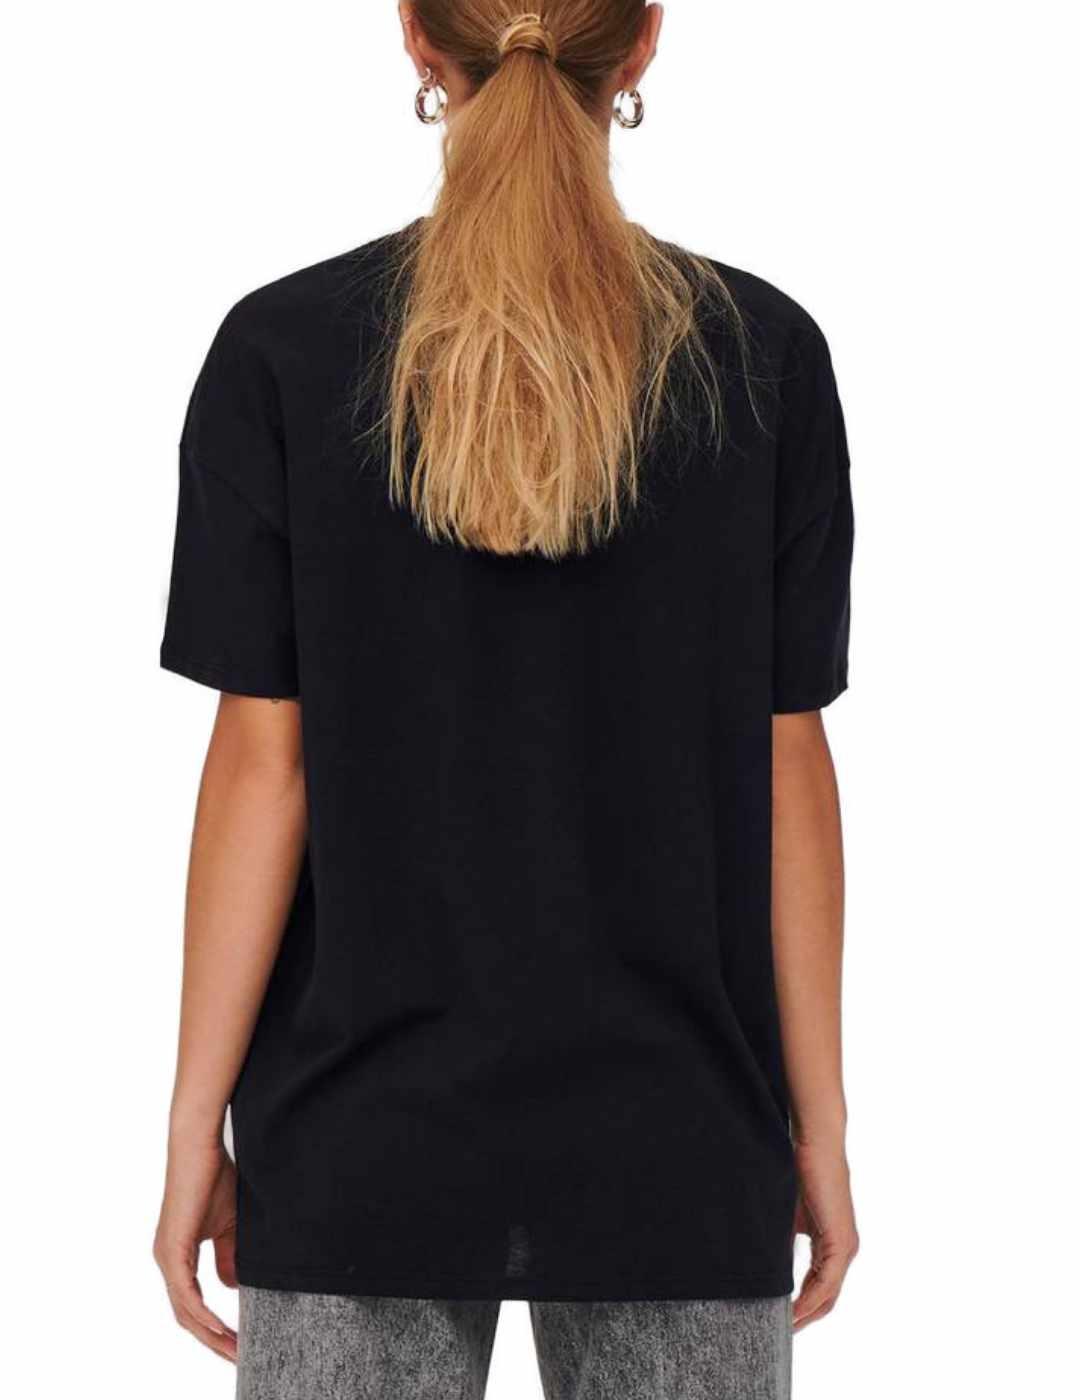 Camiseta Only Fiana negro para mujer -b